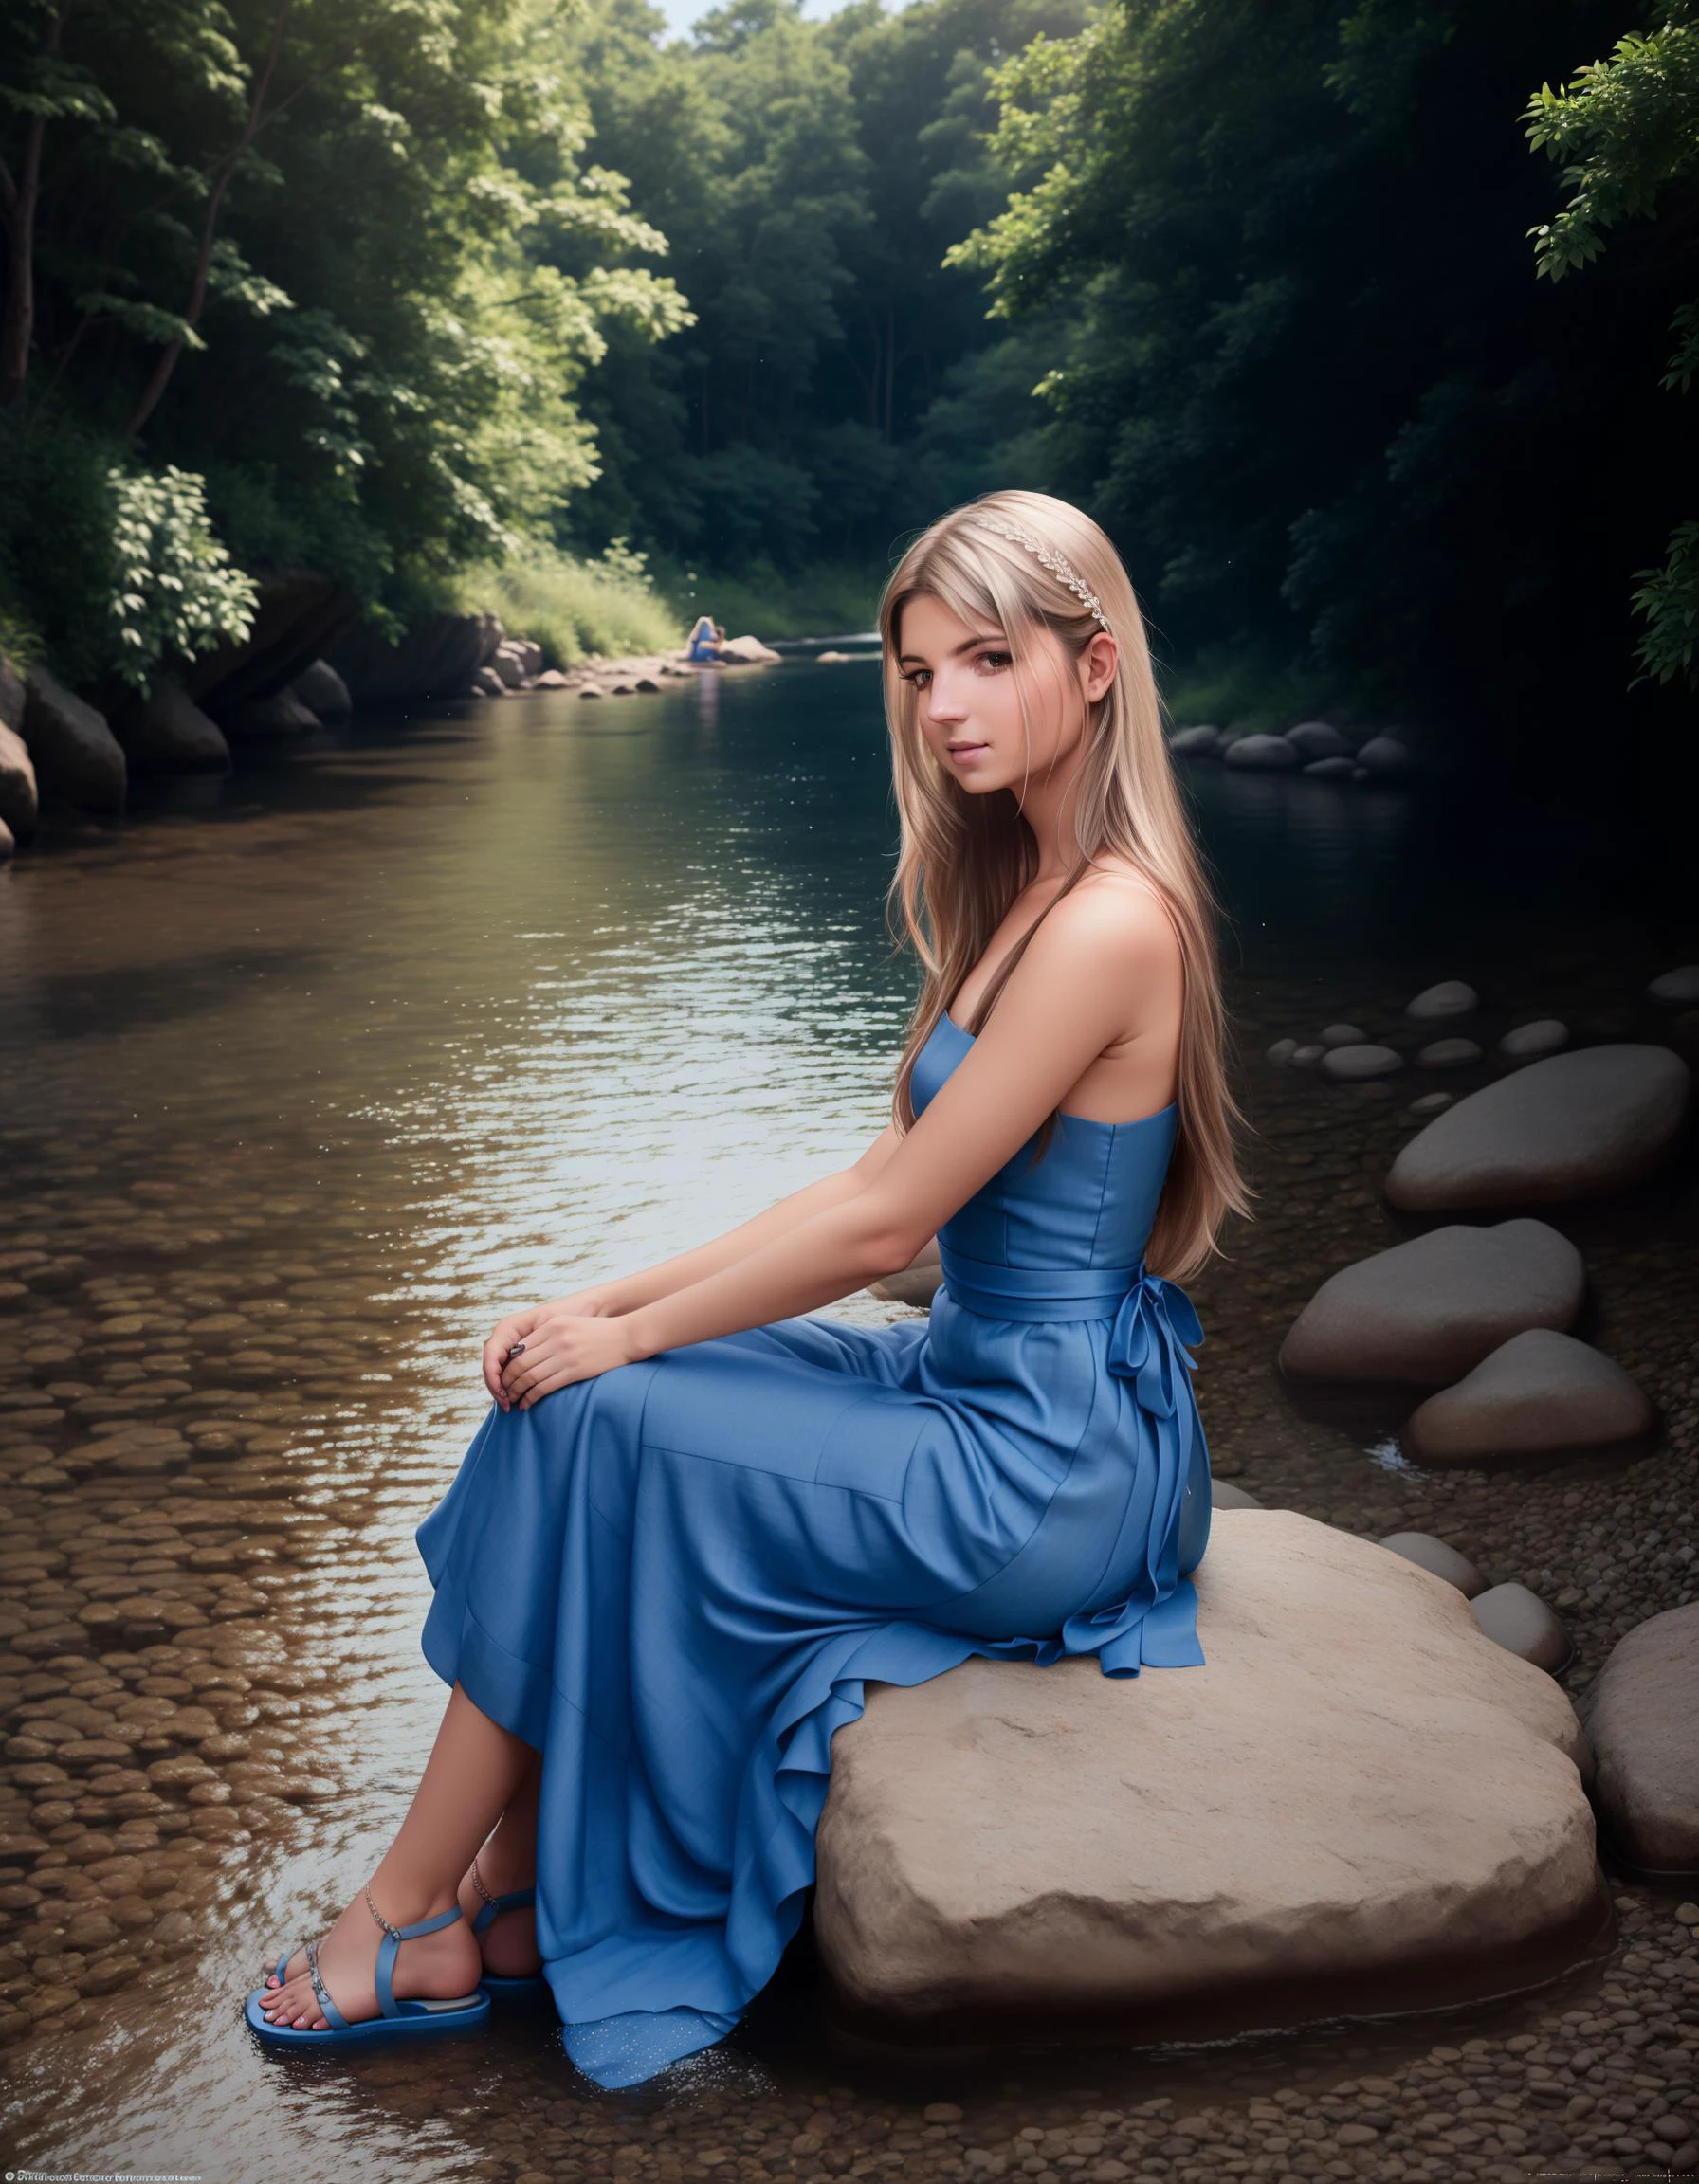 GinaGerson, Frau,
Vixen sitzt auf einem Felsen am Fluss, ihr langer Schwanz wedelt im Wasser. Sie beobachtet die vorbeischwimmenden Fische, und sie sieht friedlich und gelassen aus. Sie trägt ein blaues Kleid aus Leinen. Das Kleid ist schlicht und elegant, und es lässt sie aussehen wie eine Prinzessin. Dazu trägt sie ein Paar Sandalen aus Leder.